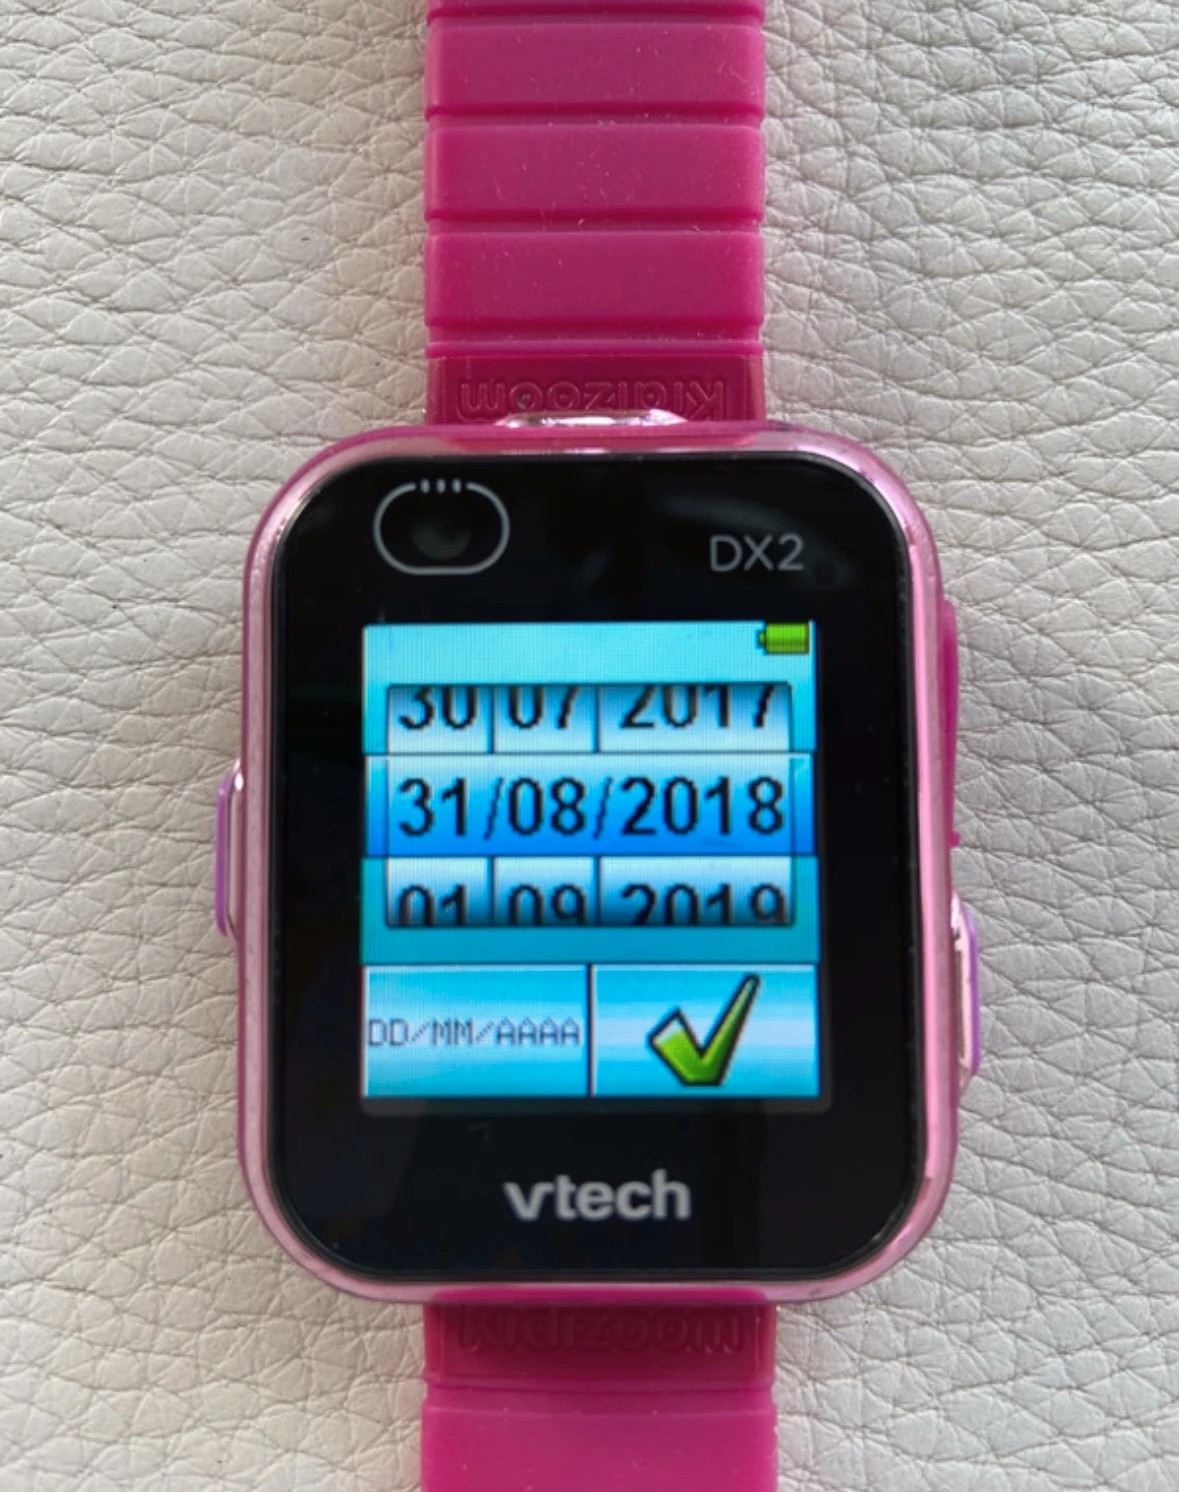 Vtech Kidizoom Smart Watch DX2 (Espagnol) Rouge - Montre connectée pour  enfants